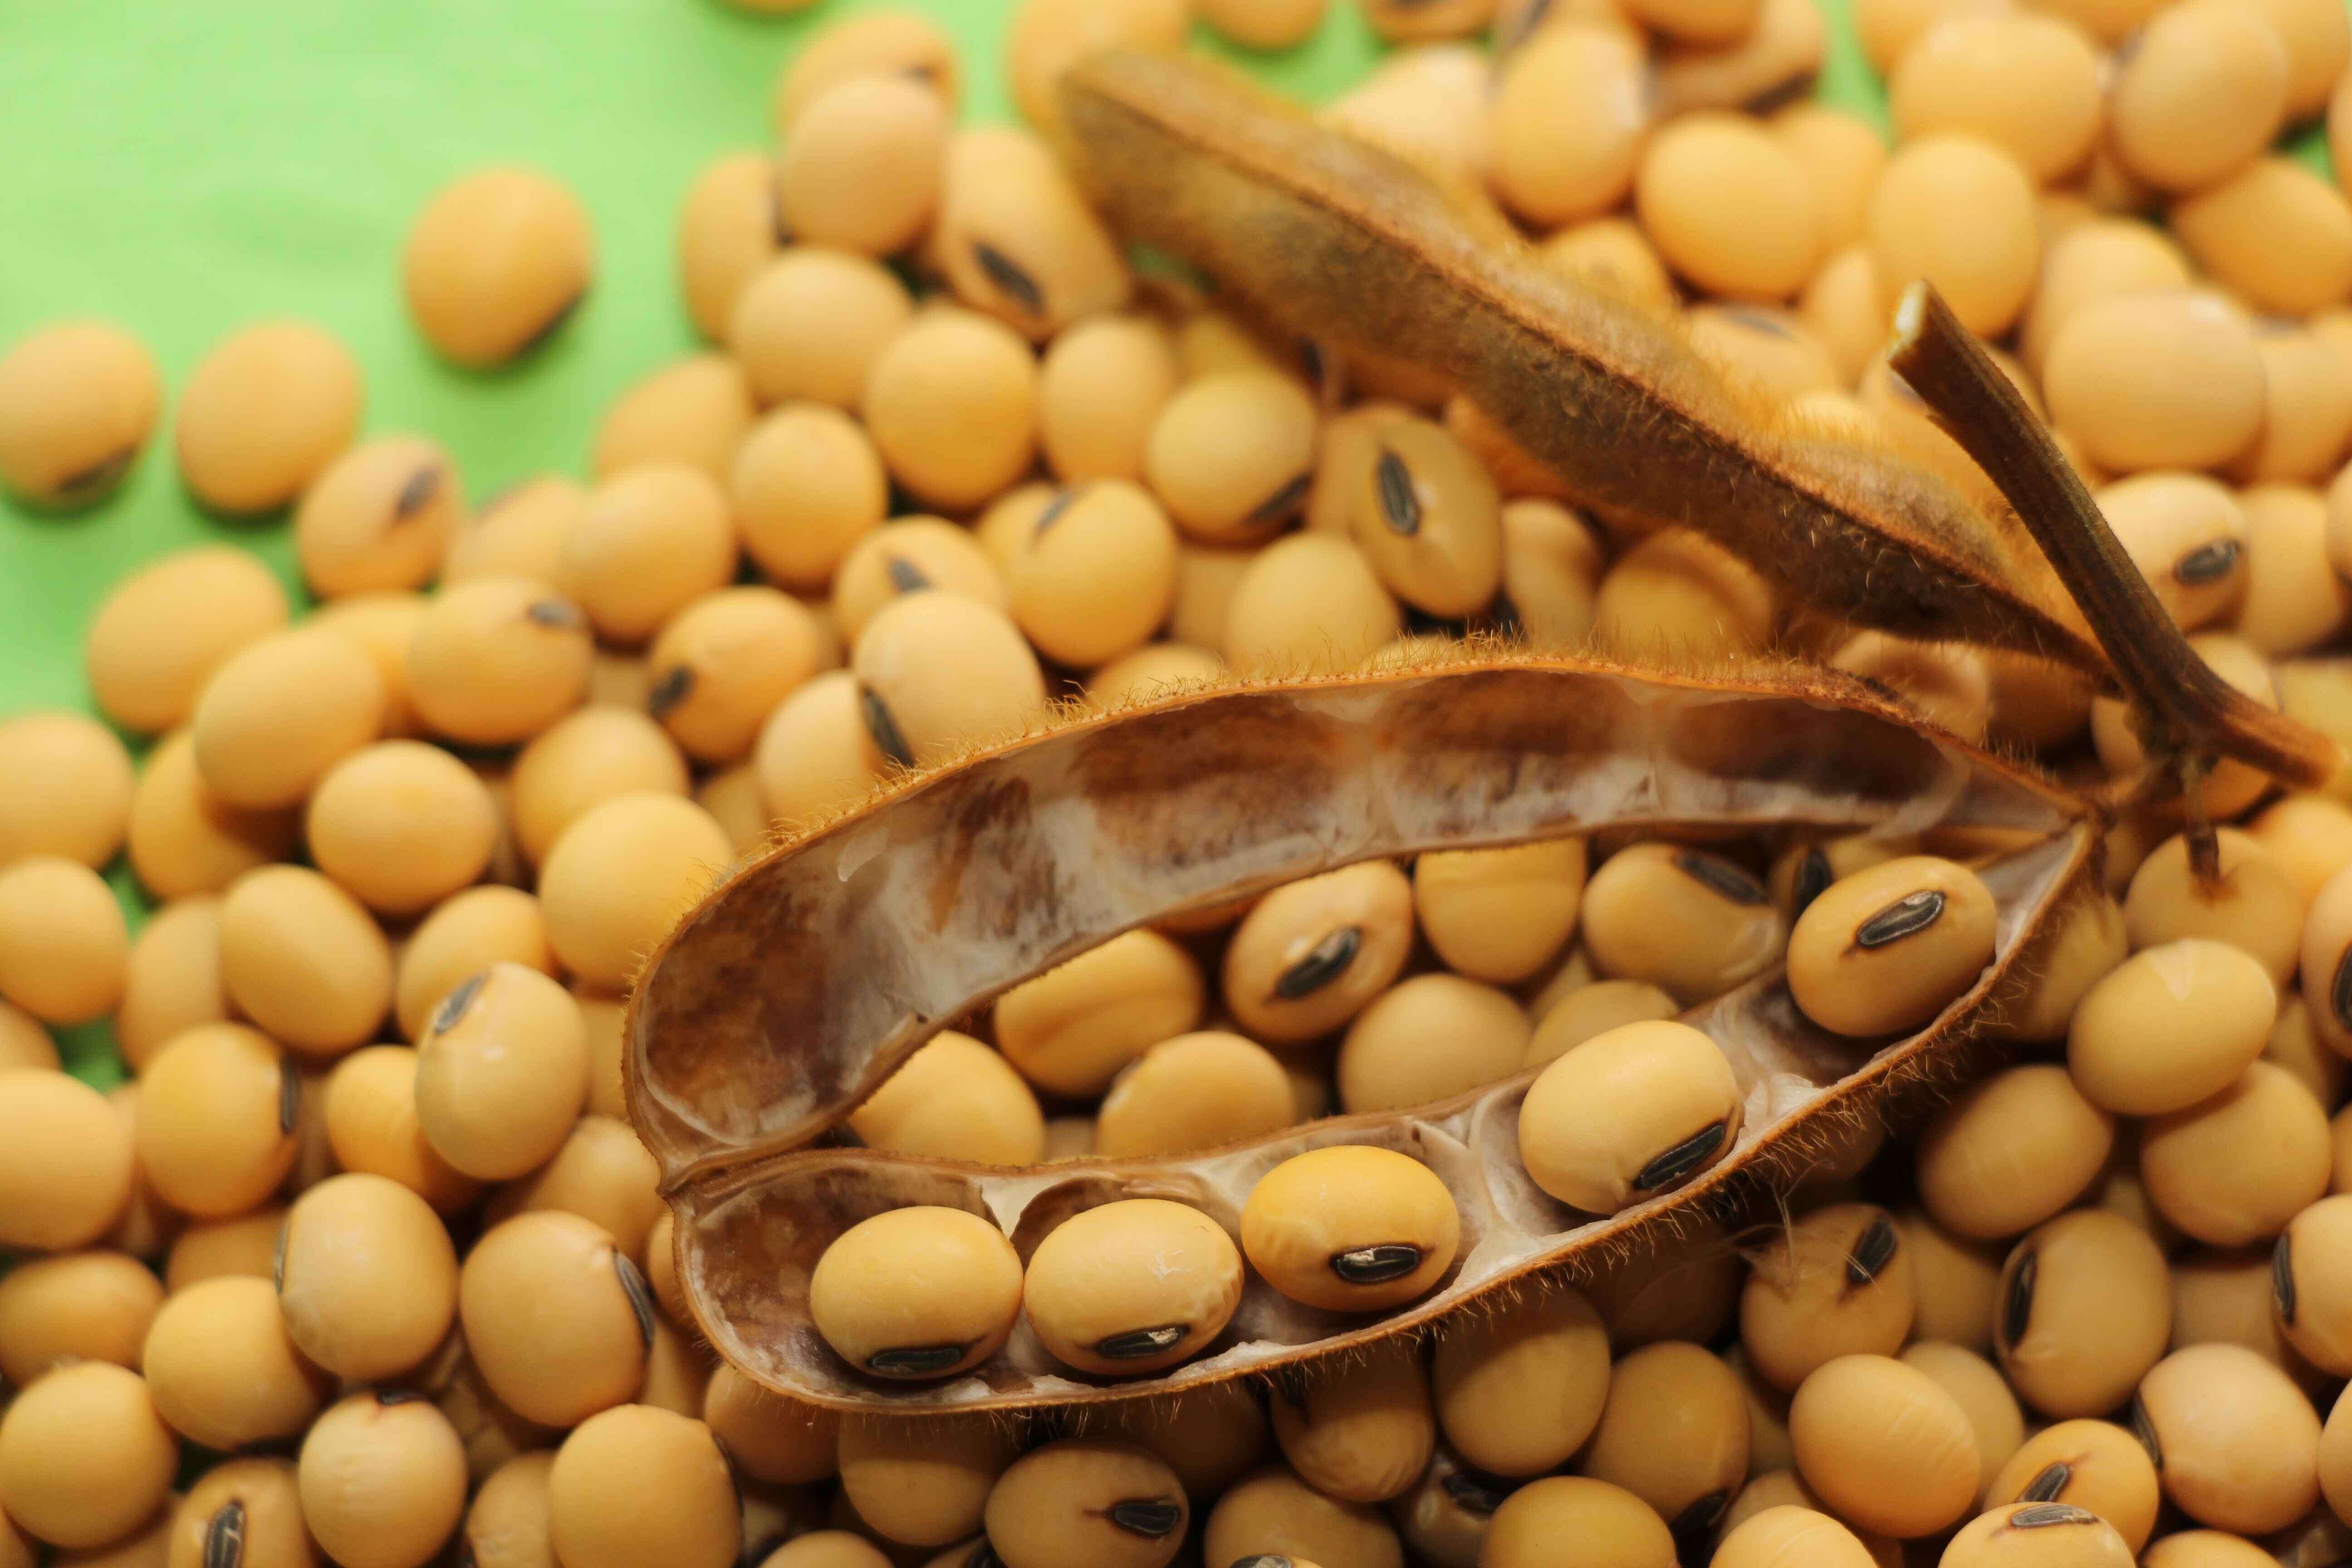 大黄豆 优质食用黄豆 食用大豆 超大粒 能发芽 生豆芽-阿里巴巴